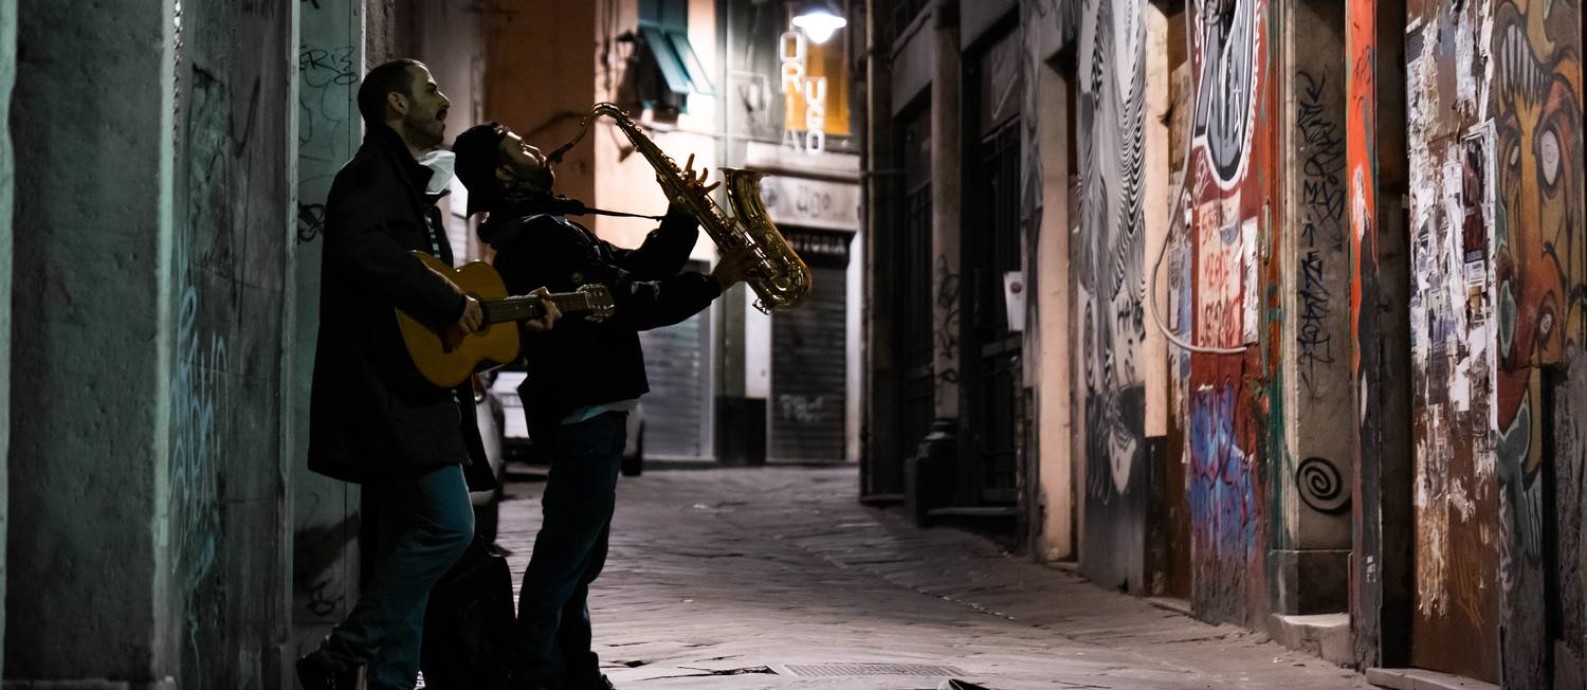 O saxofonista Marcelo Cucco e o guitarrista Gioele Mazza tocam em uma rua vazia de Gênova, na Itália Foto: Nicolò Metti / Divulgação